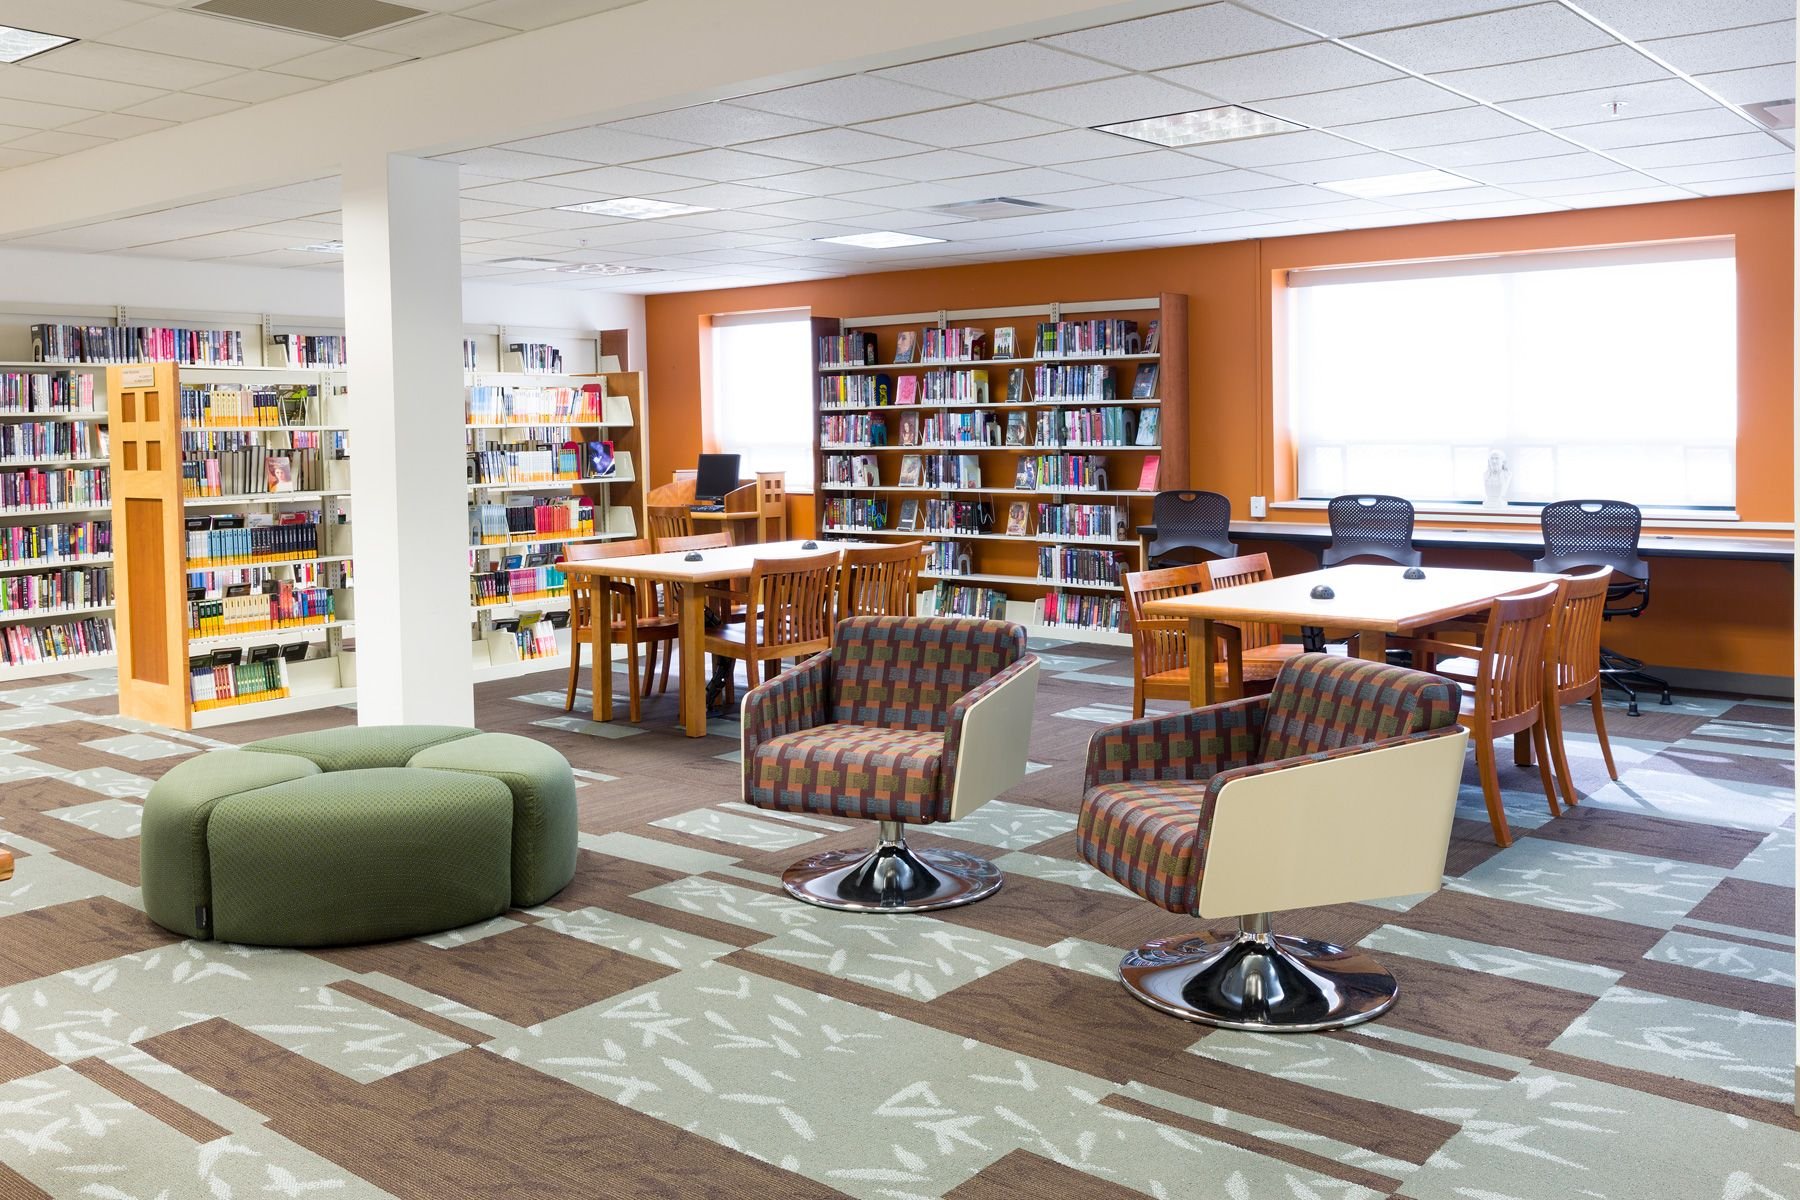 Дизайн библиотеки общественной. Библиотека мебель. Дизайн библиотеки в школе. Дизайн школьной библиотеки в современном стиле. Библиотека лаундж.